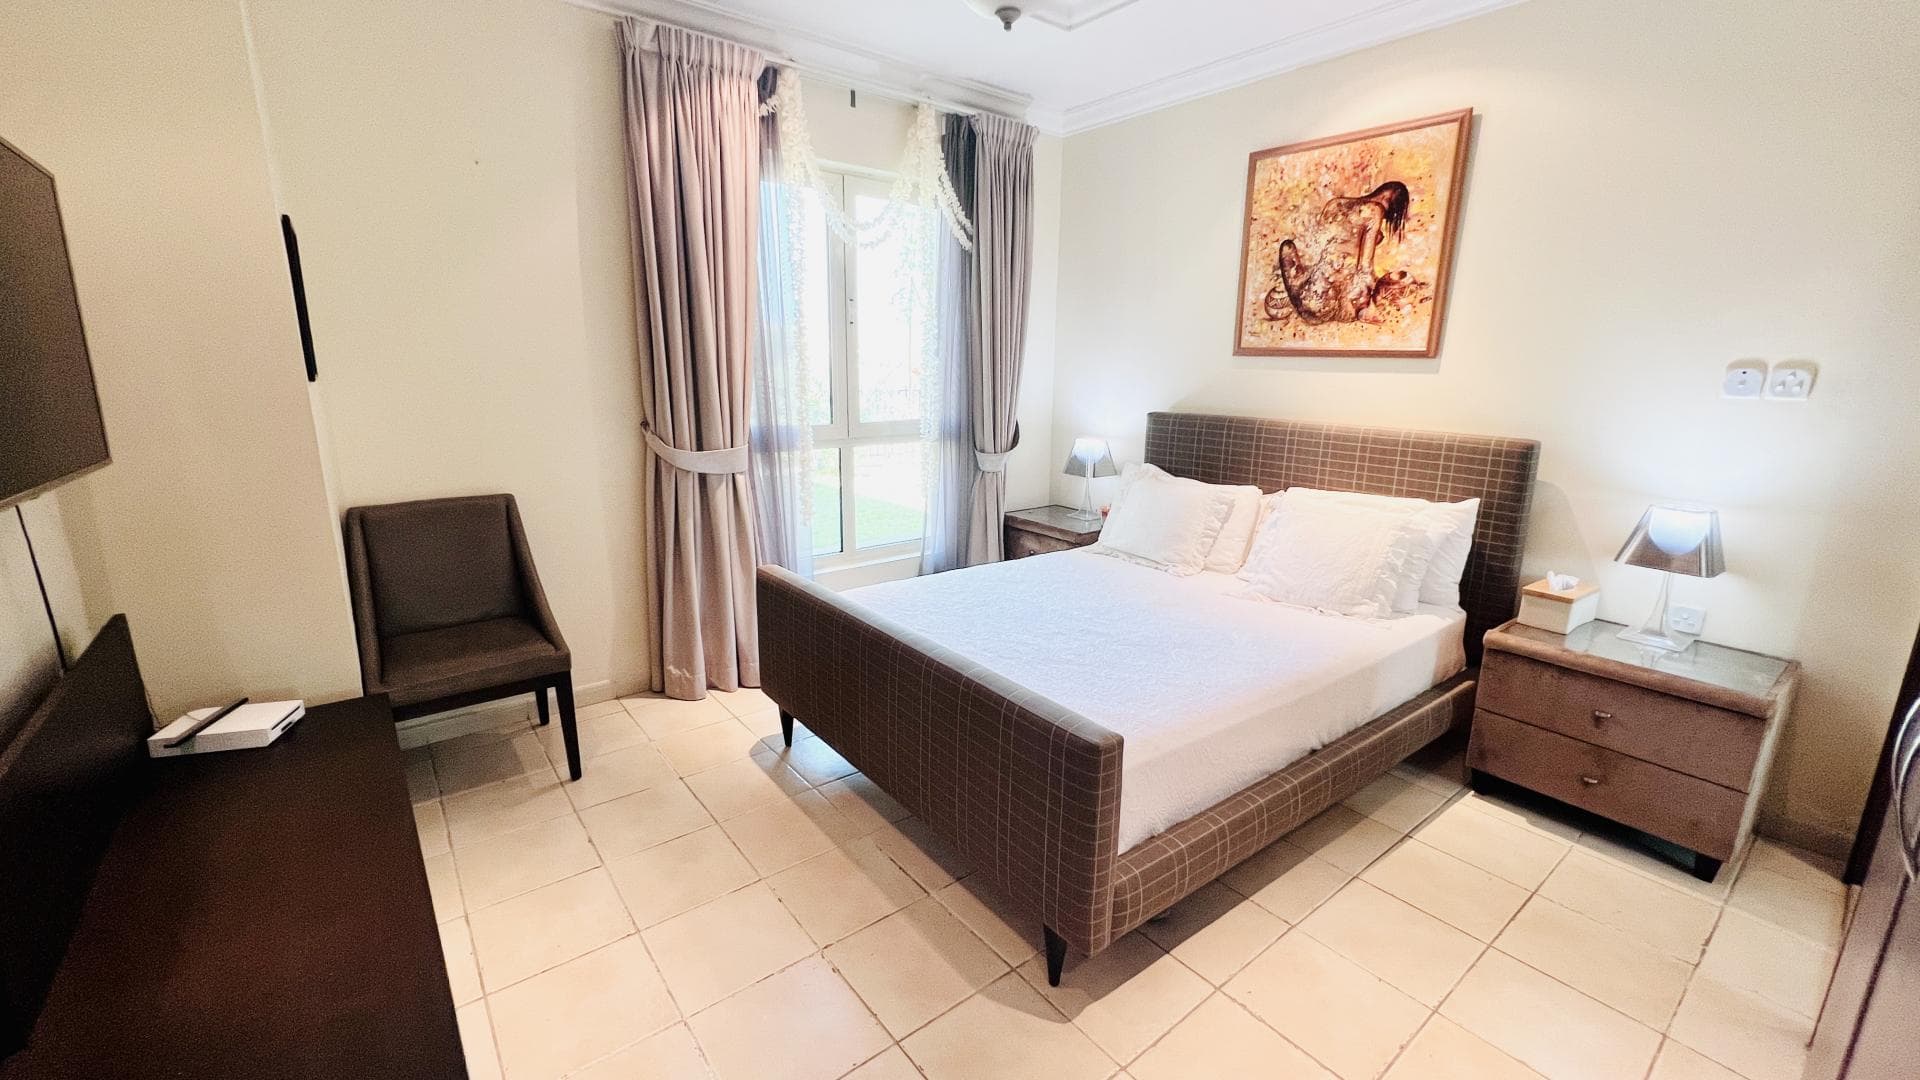 4 Bedroom Villa For Rent Al Thamam 13 Lp34779 12db79e46c0f6200.jpg